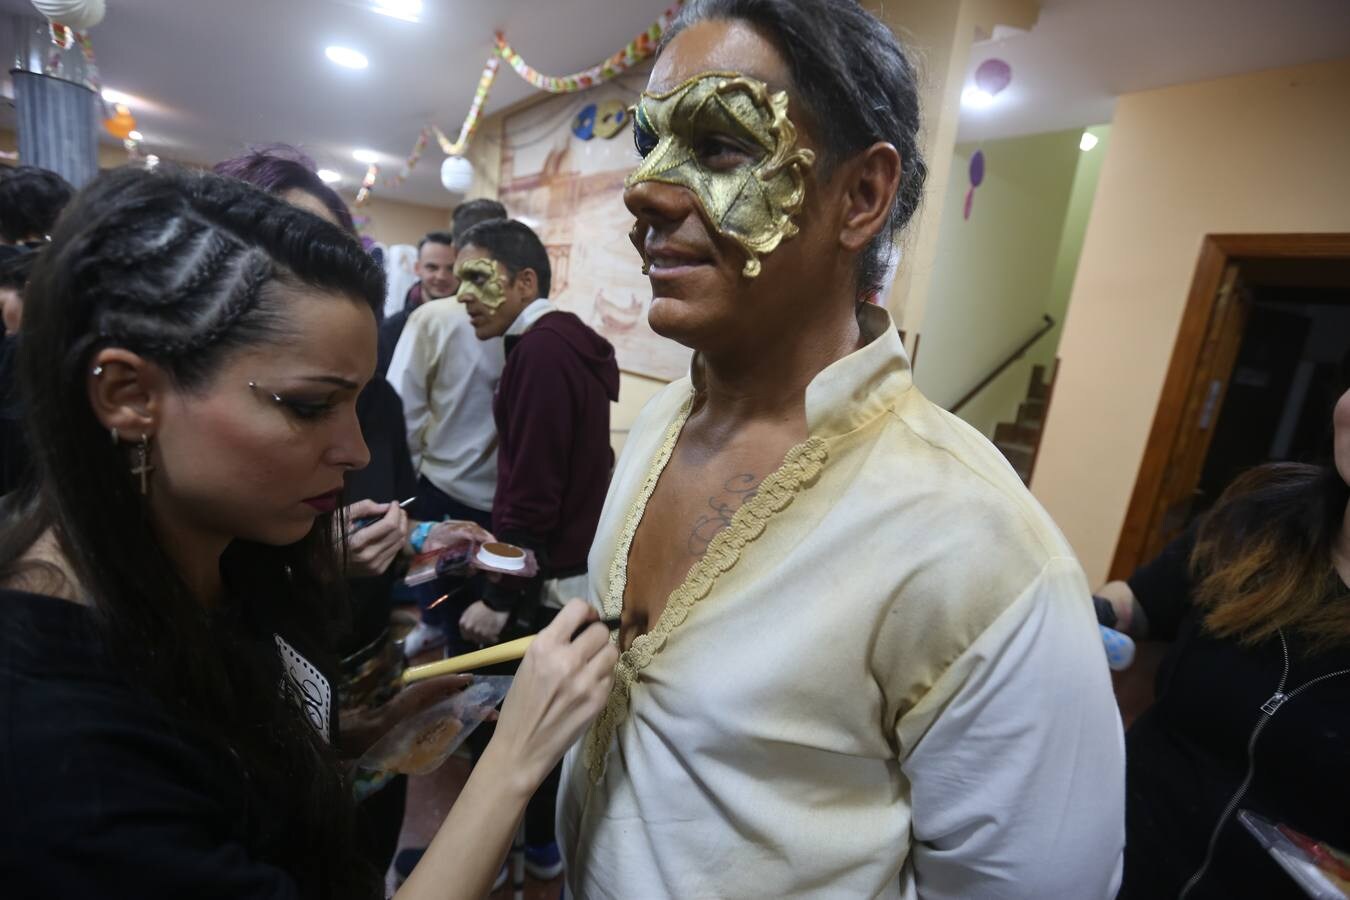 FOTOS: Sesión de maquillaje con Ares en el Carnaval de Cádiz 2018